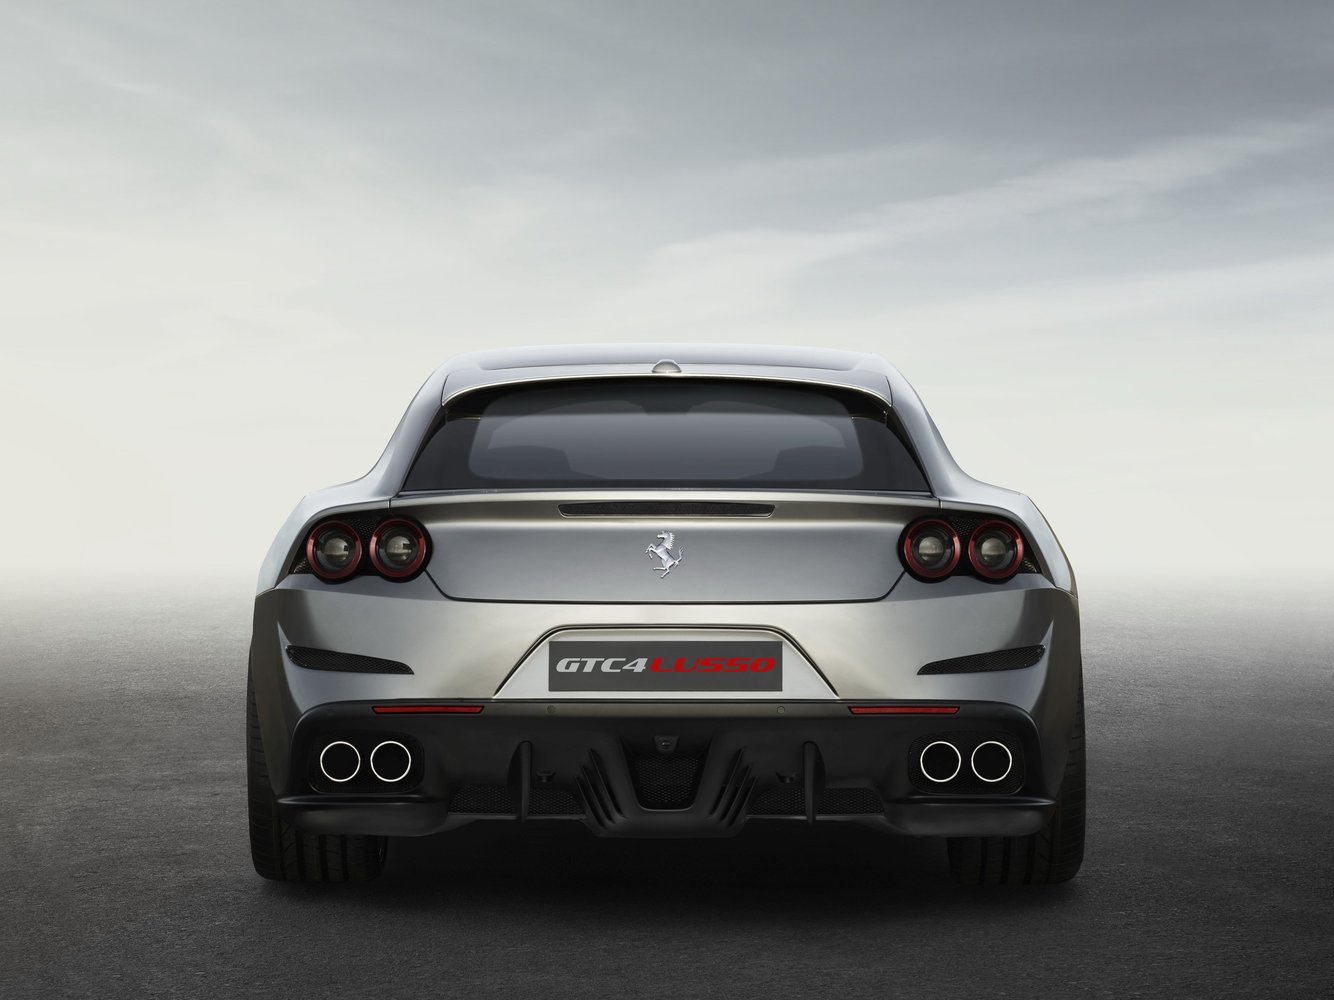 хэтчбек 3 дв. Ferrari GTC4Lusso 2016г выпуска модификация 6.3 AMT (690 л.с.) 4×4